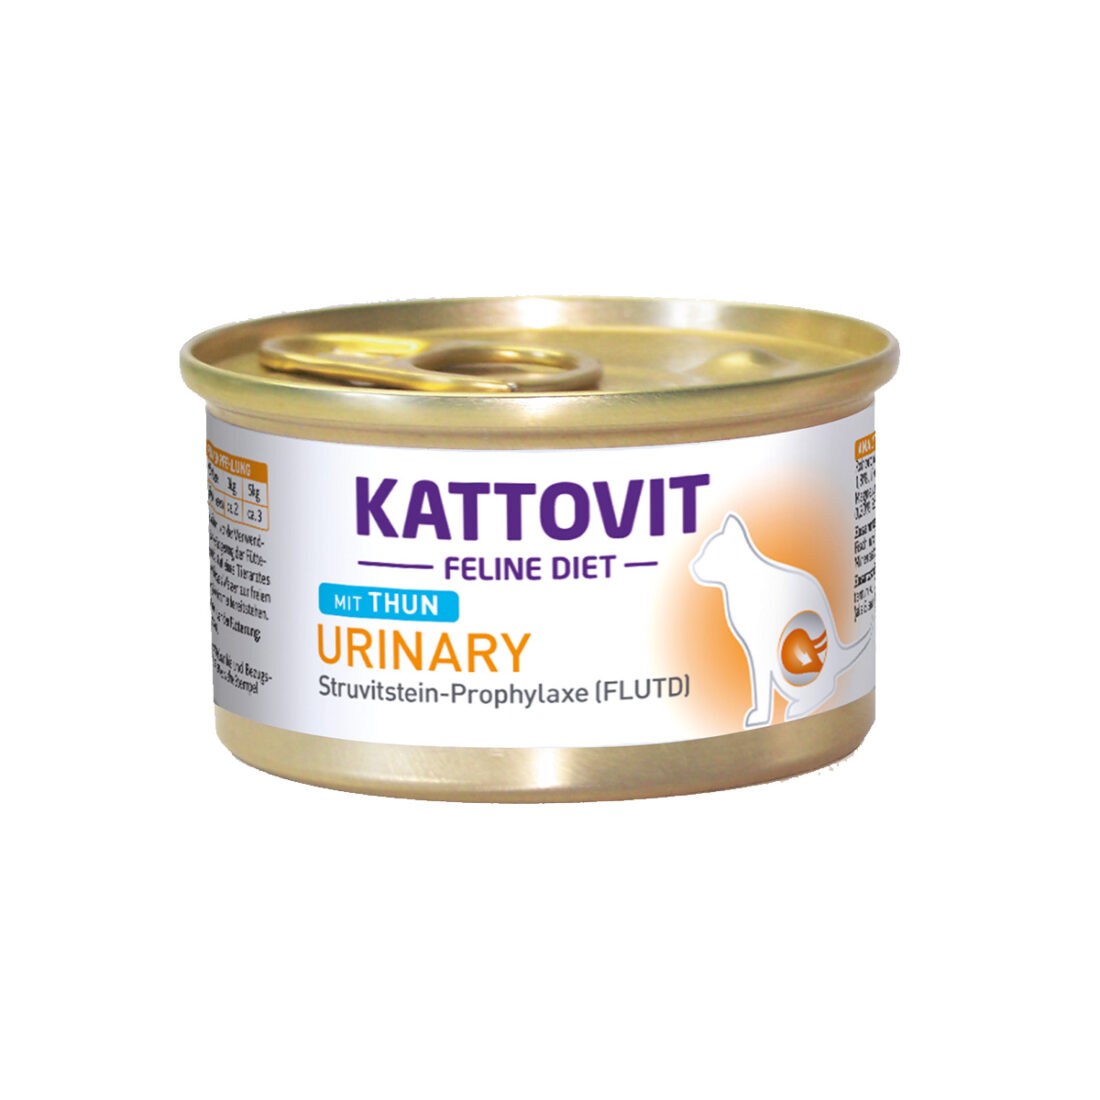 KATTOVIT Feline Diet Urinary tuňák 12